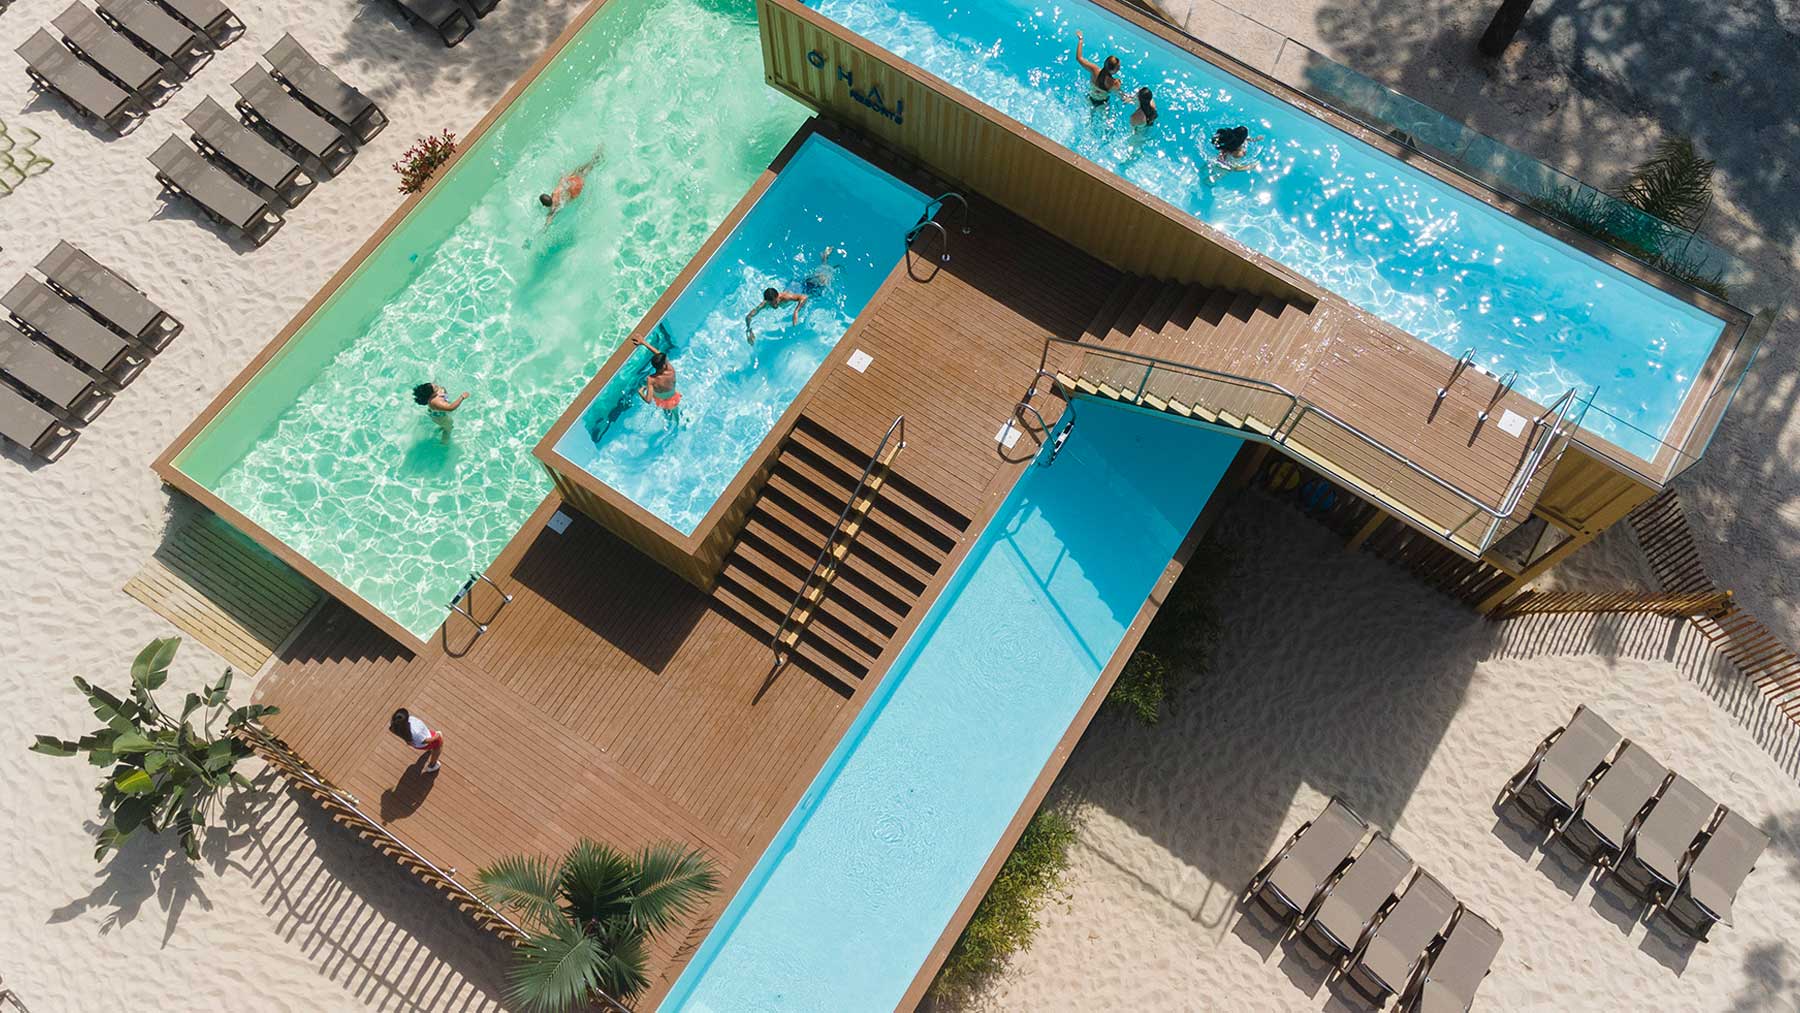 La piscina fabricada a base de contenedores marinos reciclados del outdoor resort Ohai Nazaré, en Portugal.